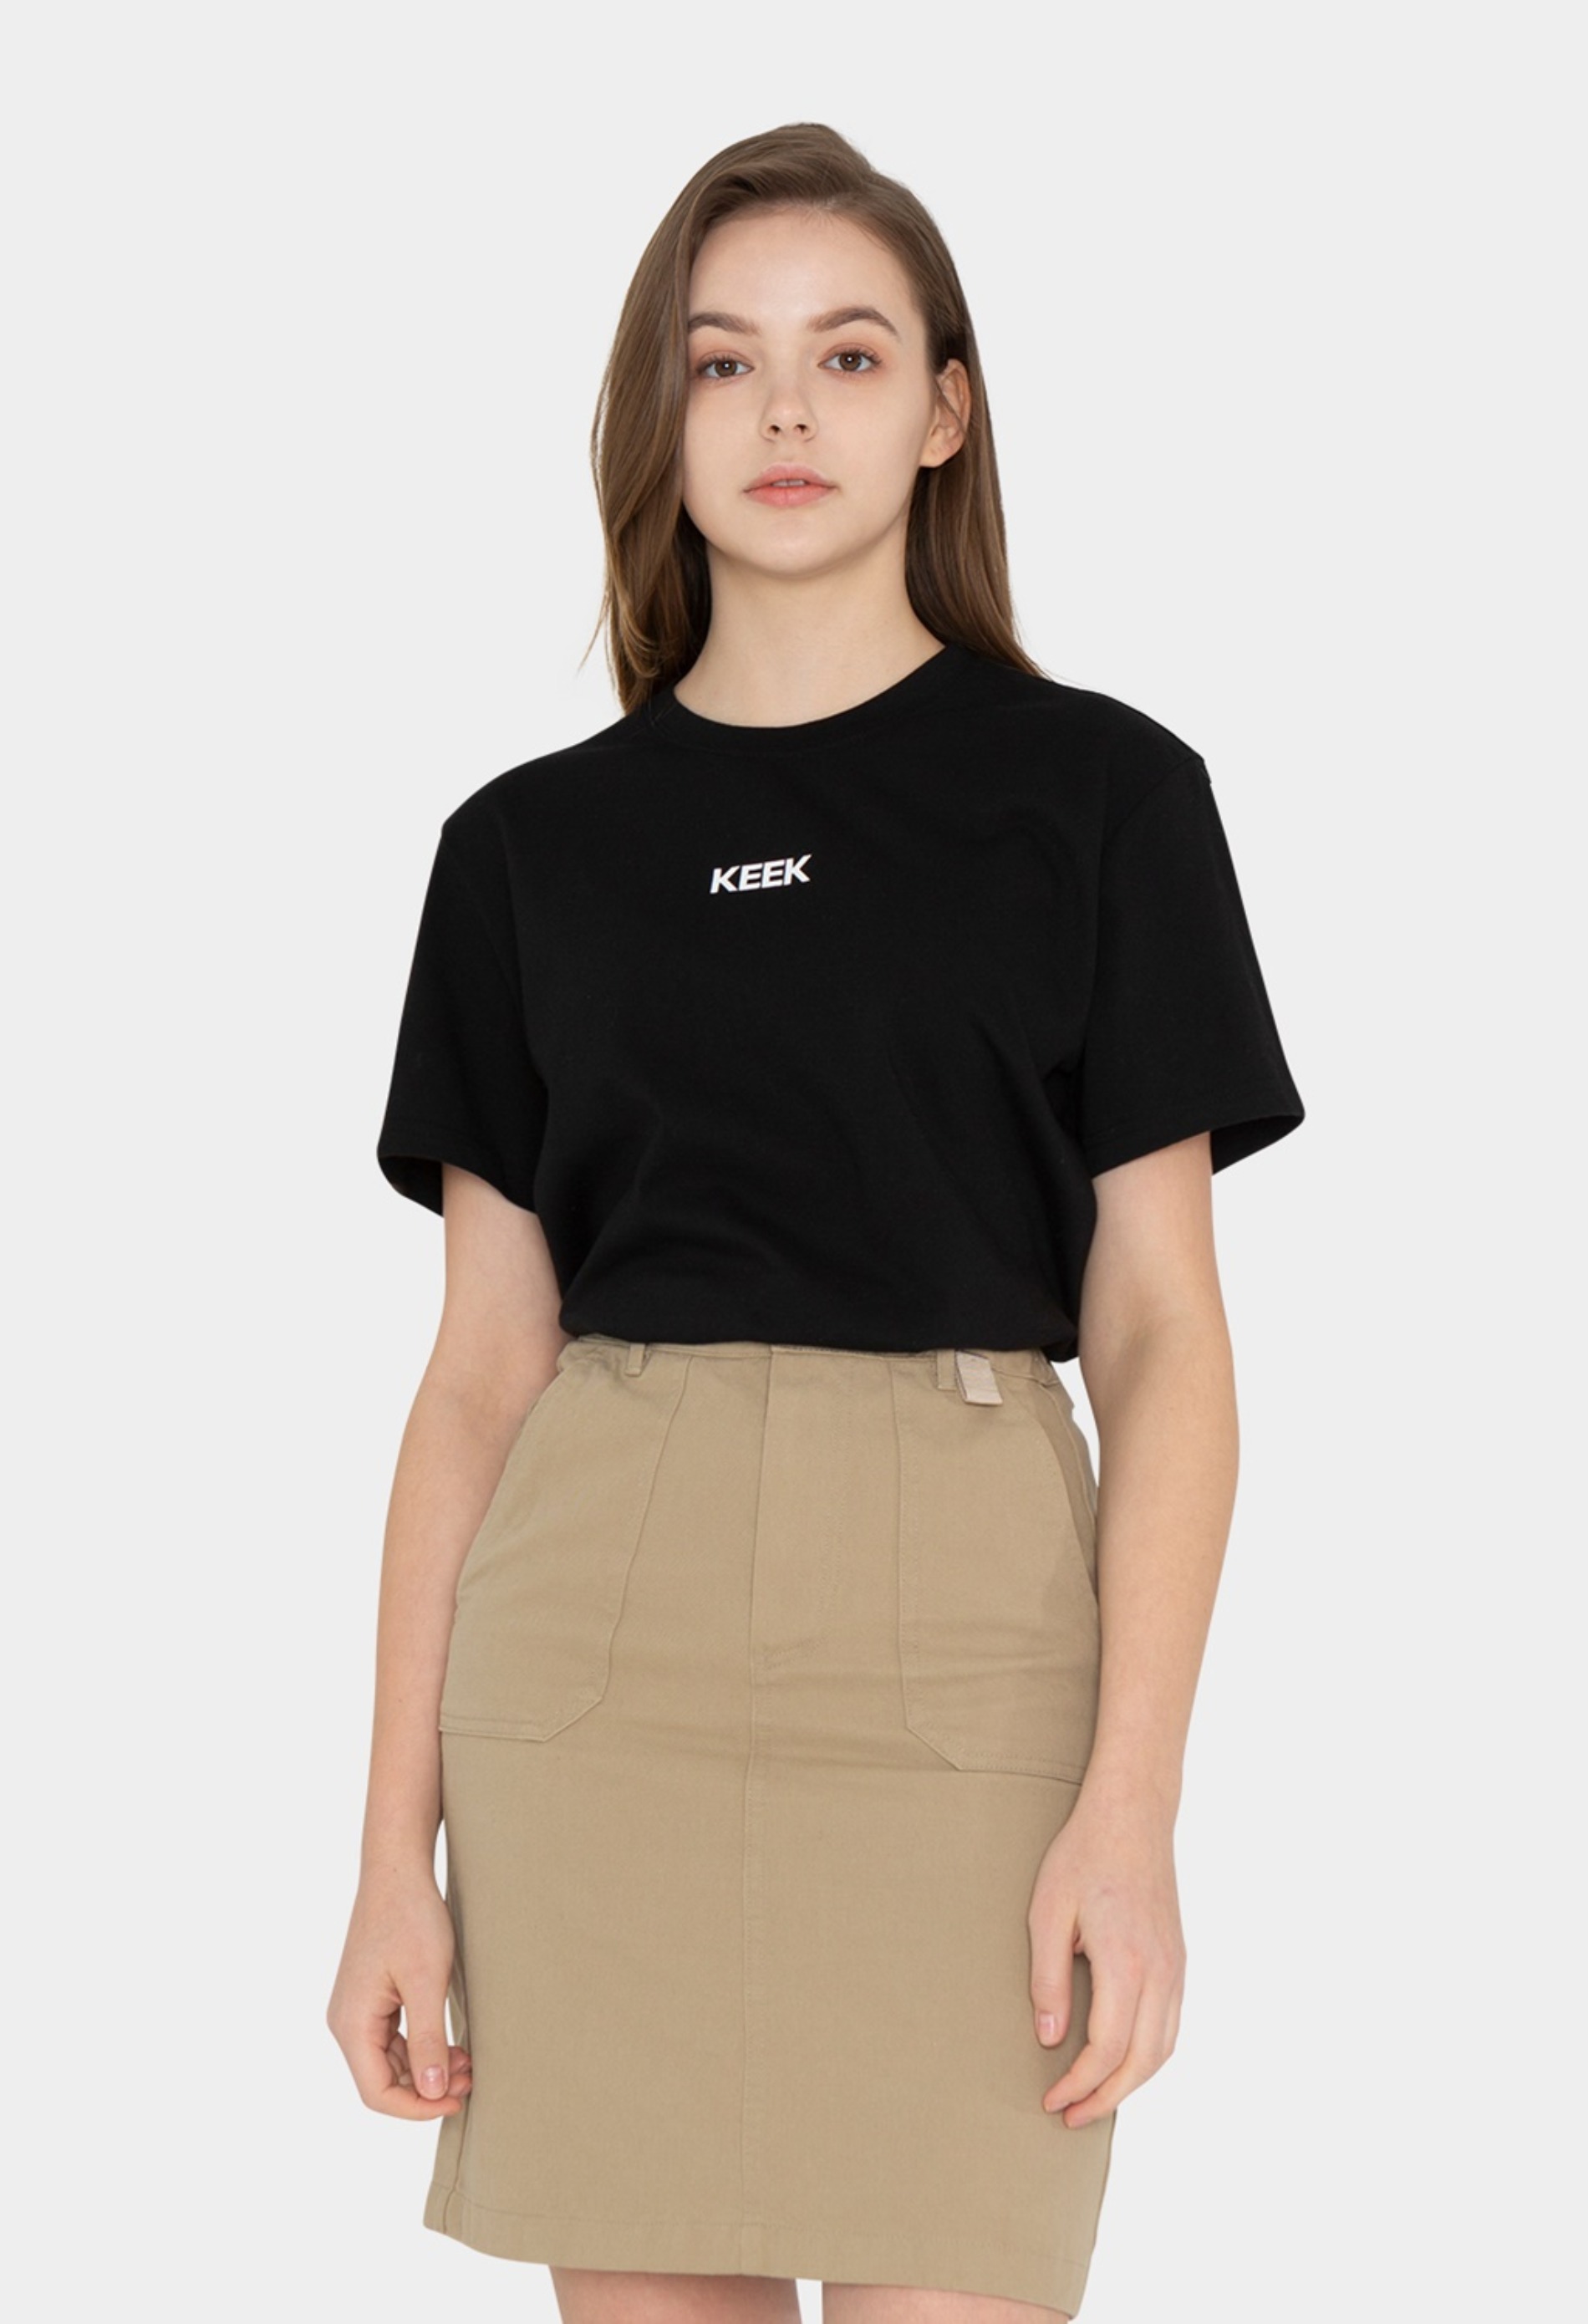 keek Logo Graphic T-shirts - Black 스트릿패션 유니섹스브랜드 커플시밀러룩 남자쇼핑몰 여성의류쇼핑몰 후드티 힙색